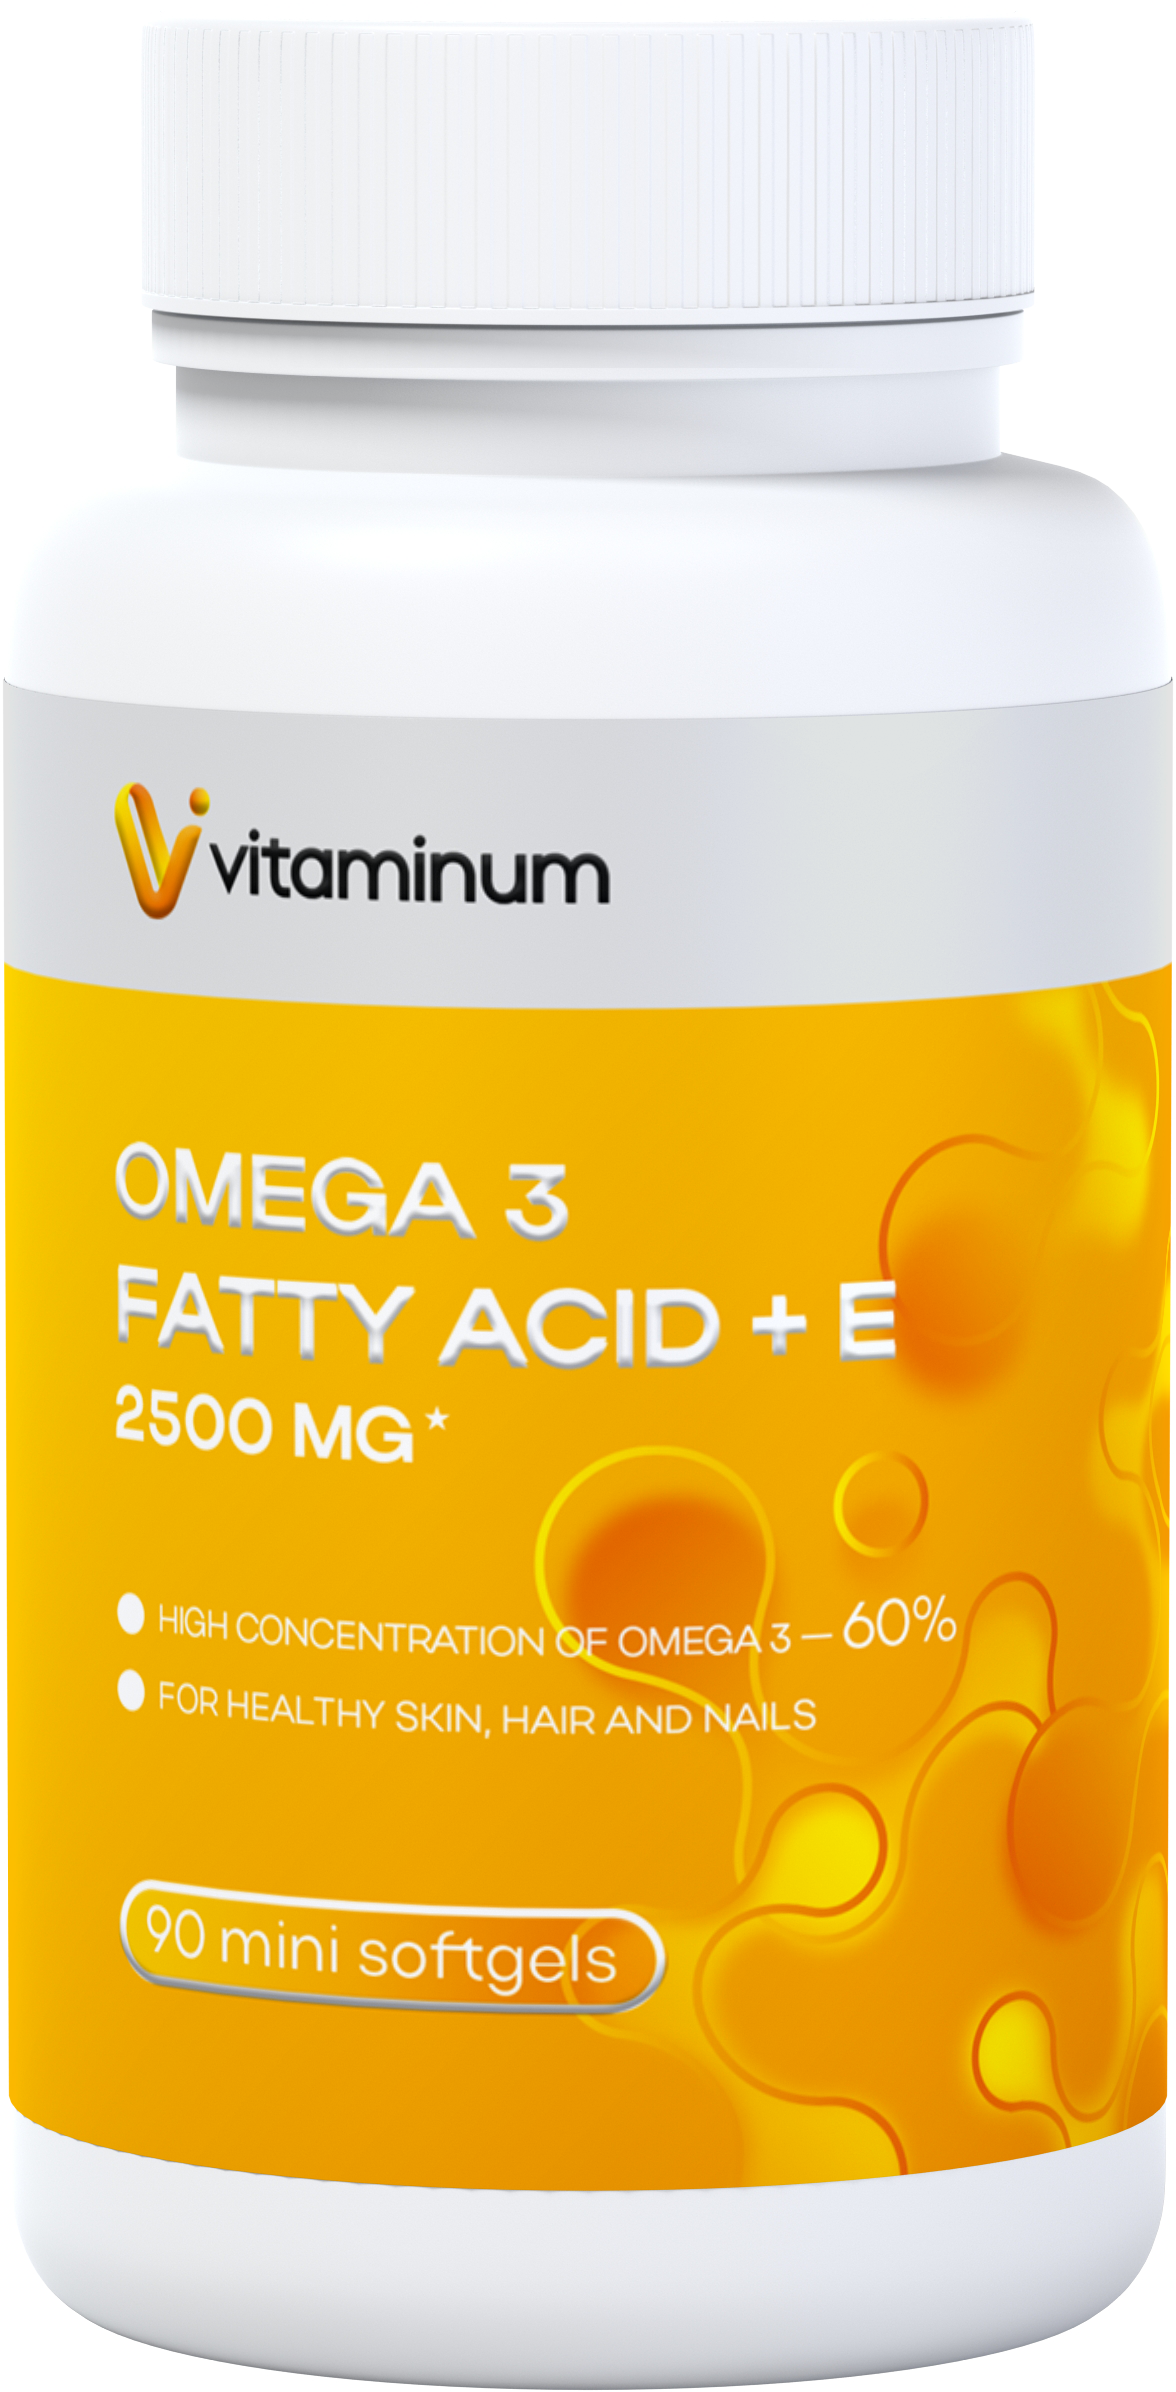  Vitaminum ОМЕГА 3 60% + витамин Е (2500 MG*) 90 капсул 700 мг   в Воронеже